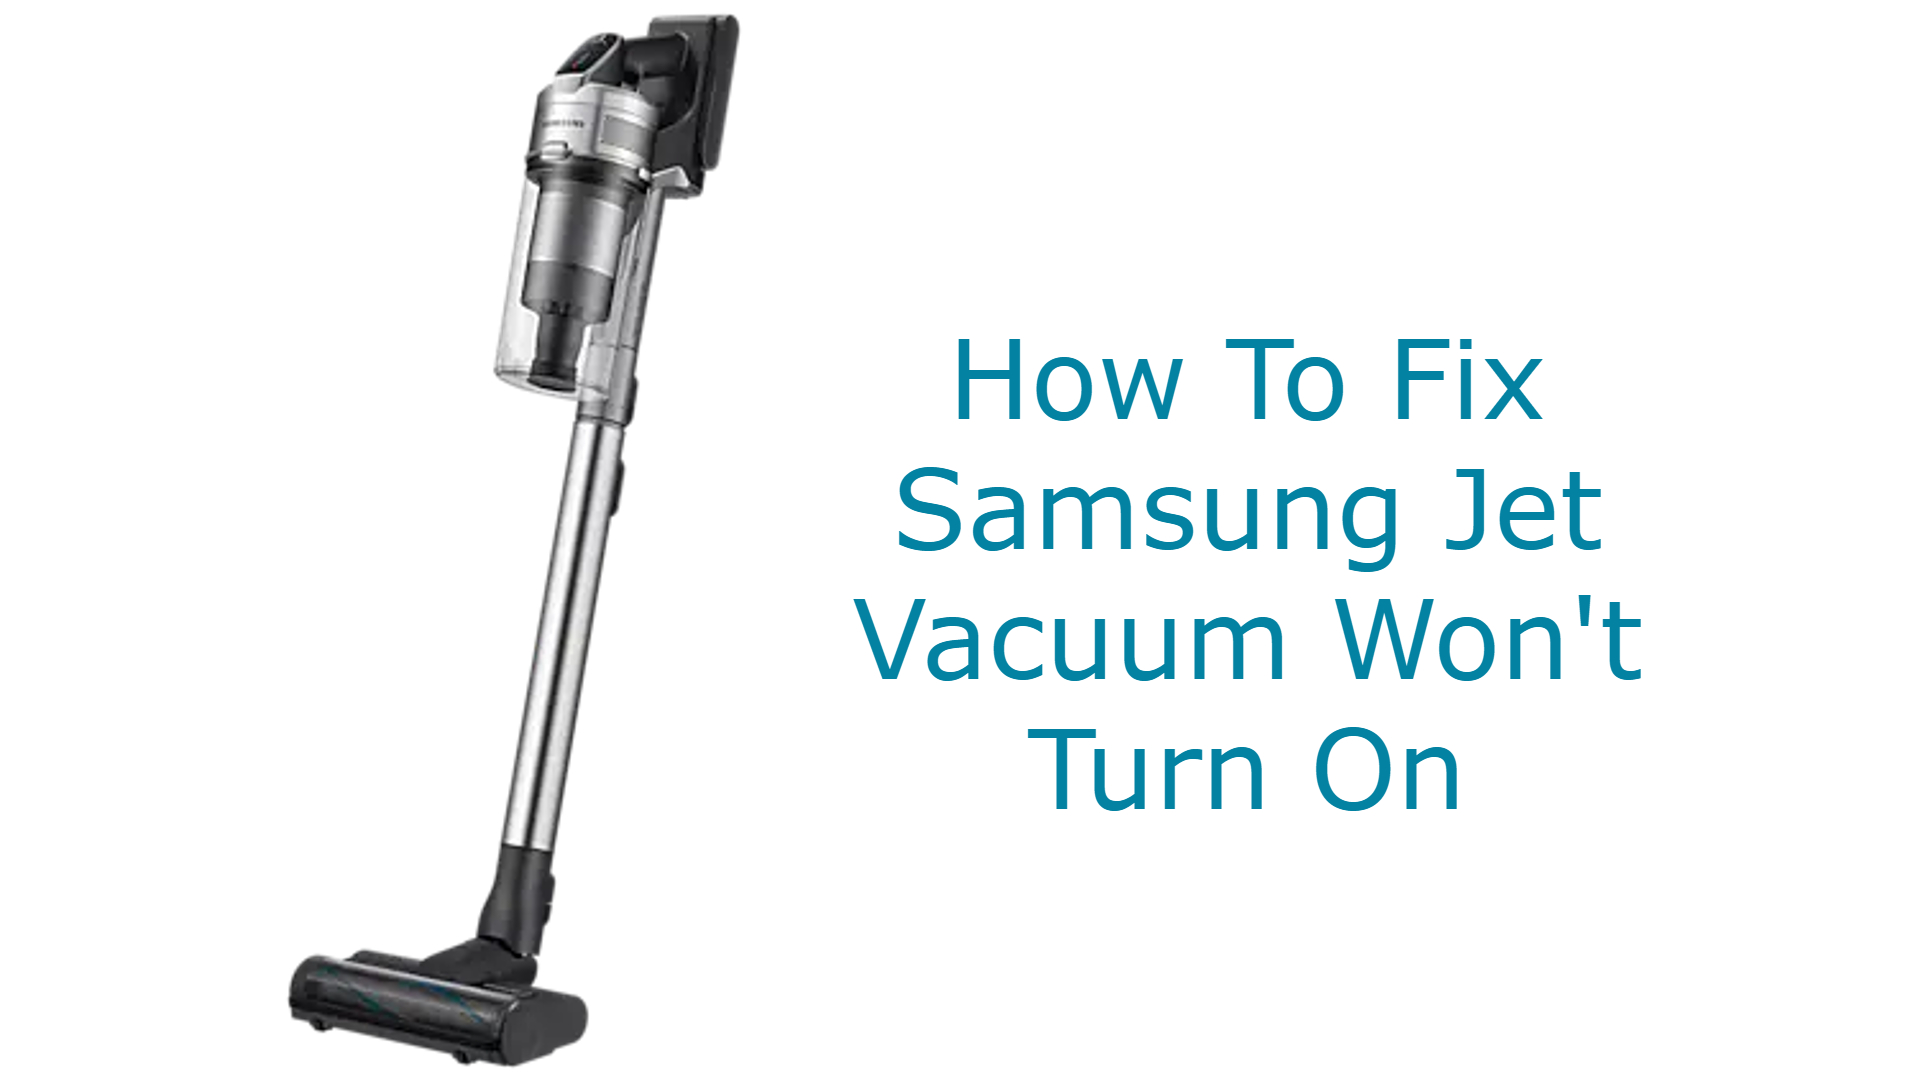 Samsung Jet Vacuum